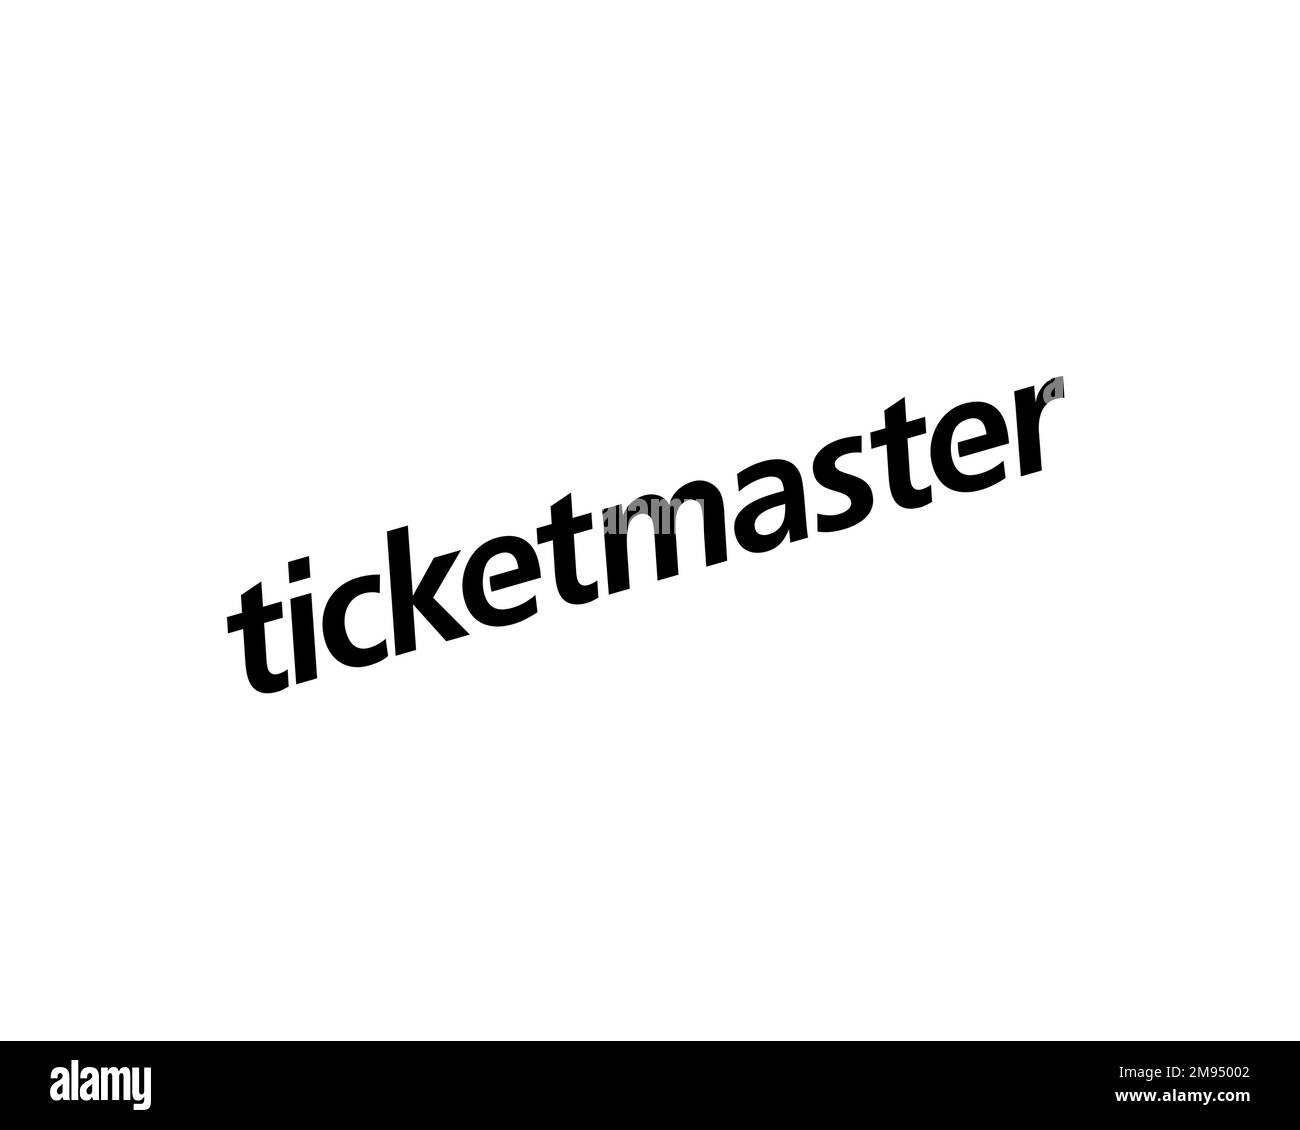 Ticketmaster, rotated logo, white background Stock Photo Alamy